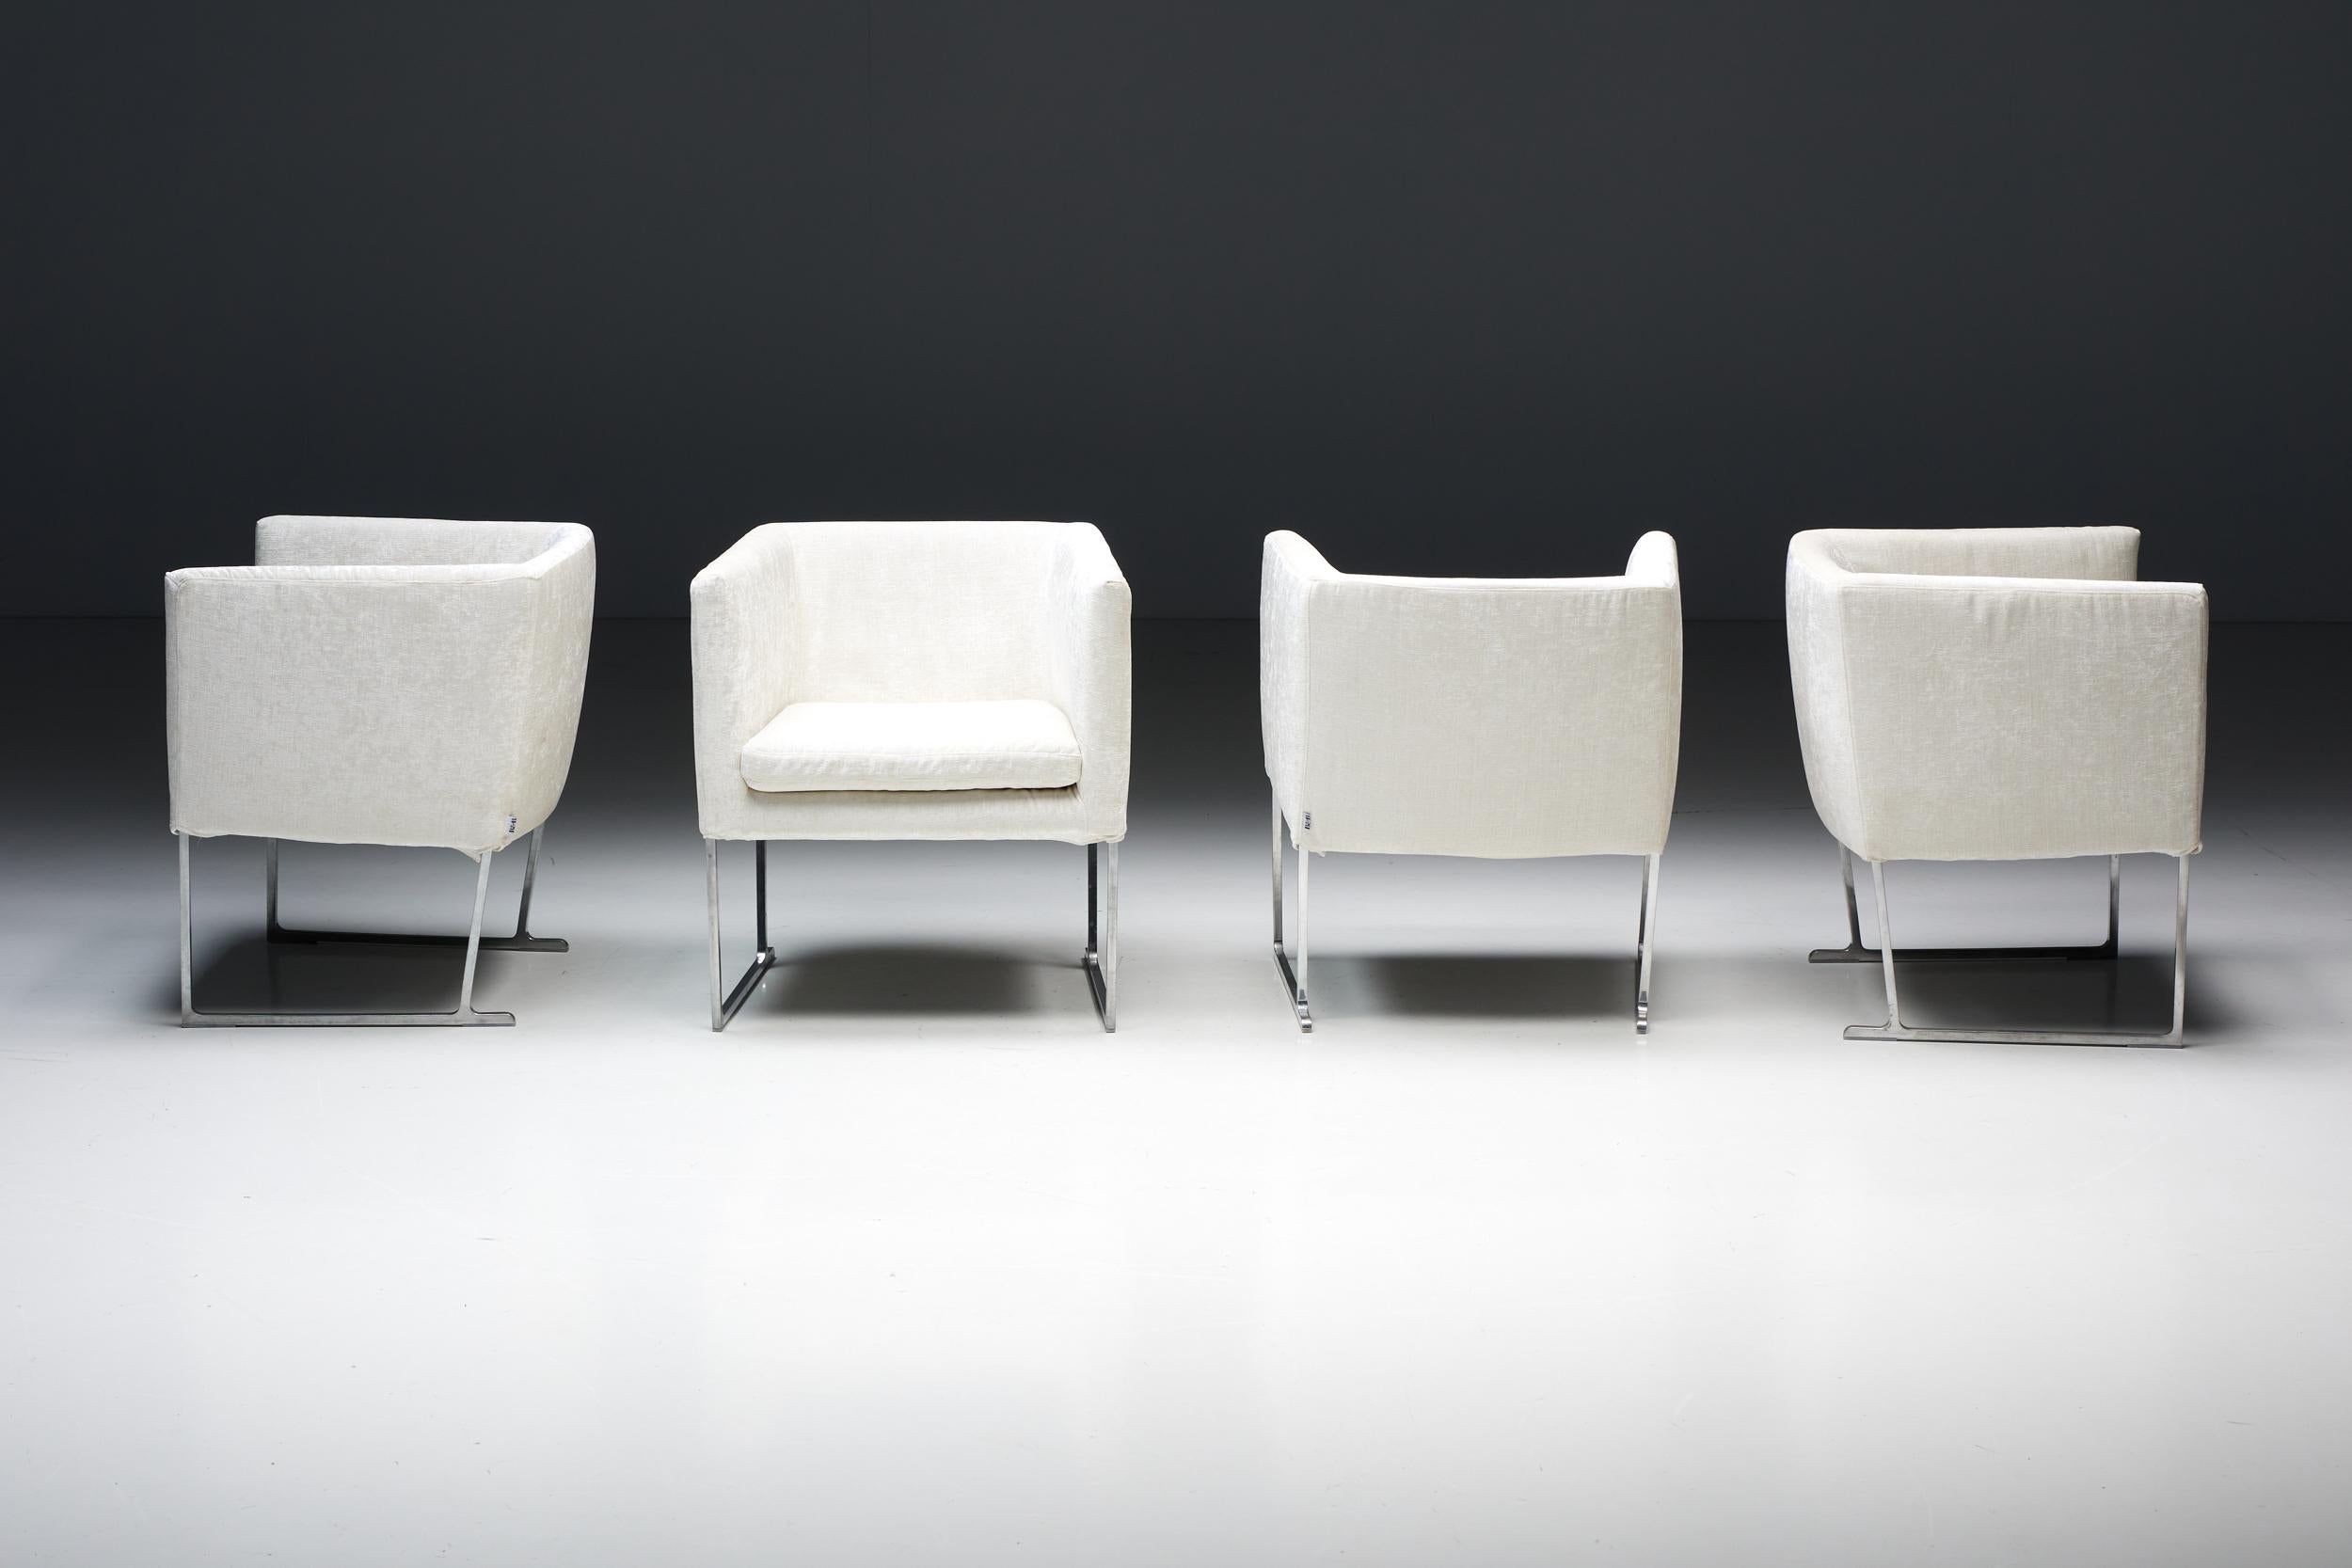 Solo-Sessel von Antonio Citterio aus luxuriösem elfenbeinweißem Samt für B&B Italia. Die unter der geschätzten Marke B&B Italia hergestellten Solosessel definieren mit ihren charakteristischen Merkmalen das Konzept des modernen Sitzens neu. Sie